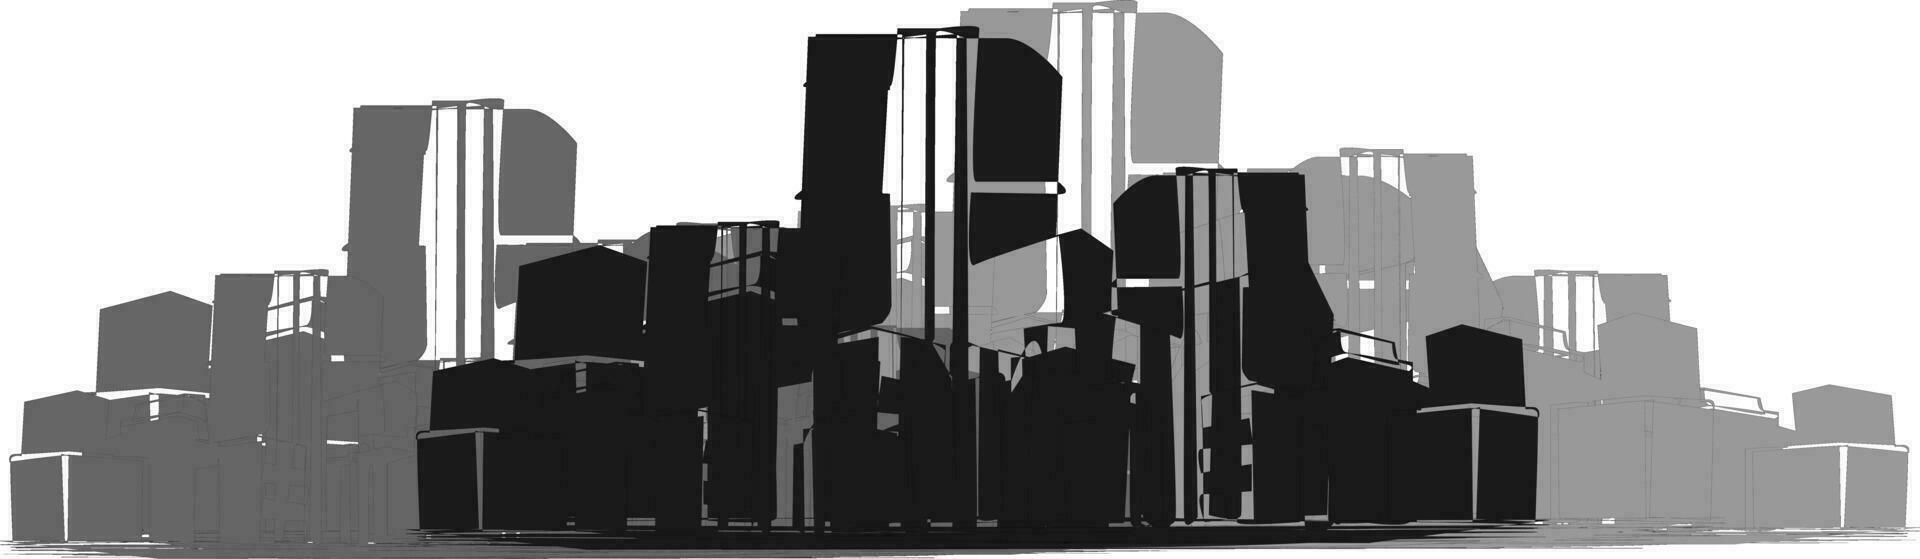 skyline della città in bianco e nero vettore